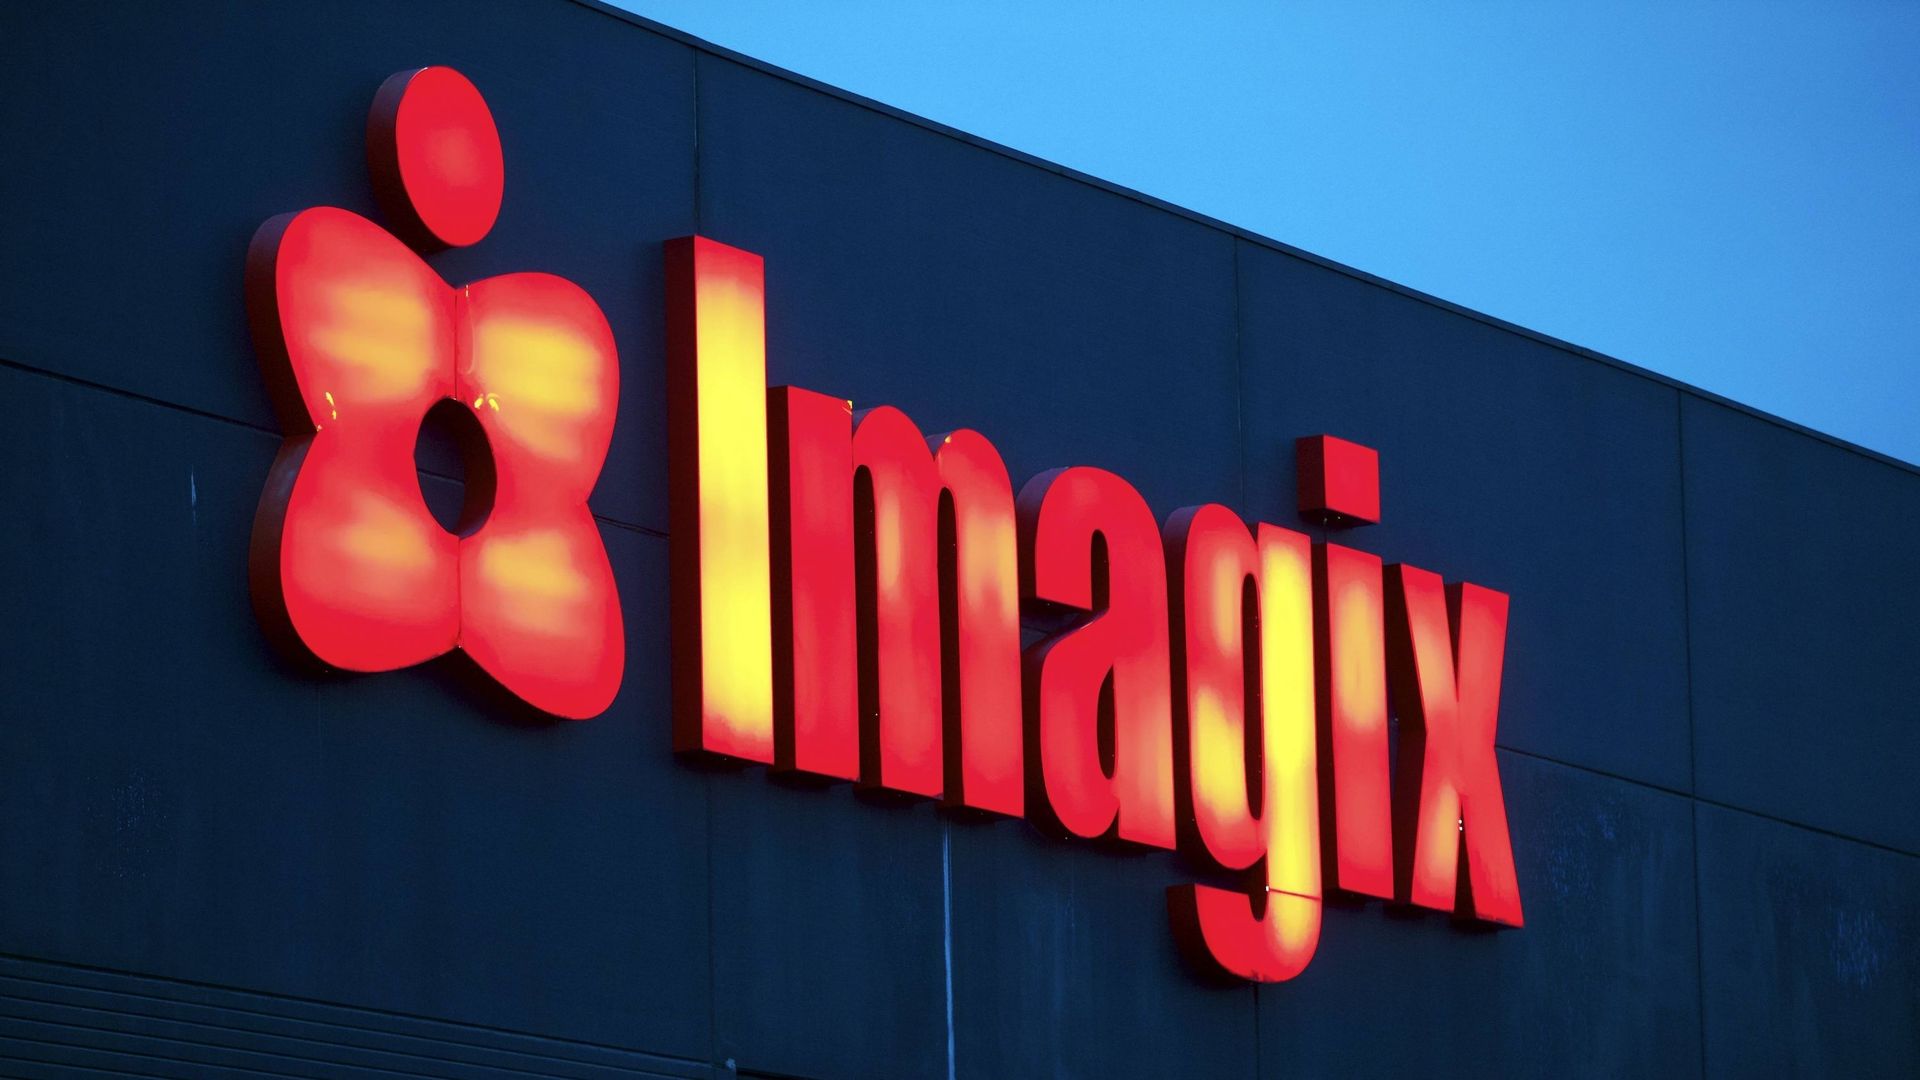 Une illustration montre le complexe cinématographique Imagix à Tournai, dimanche 25 janvier 2015.

